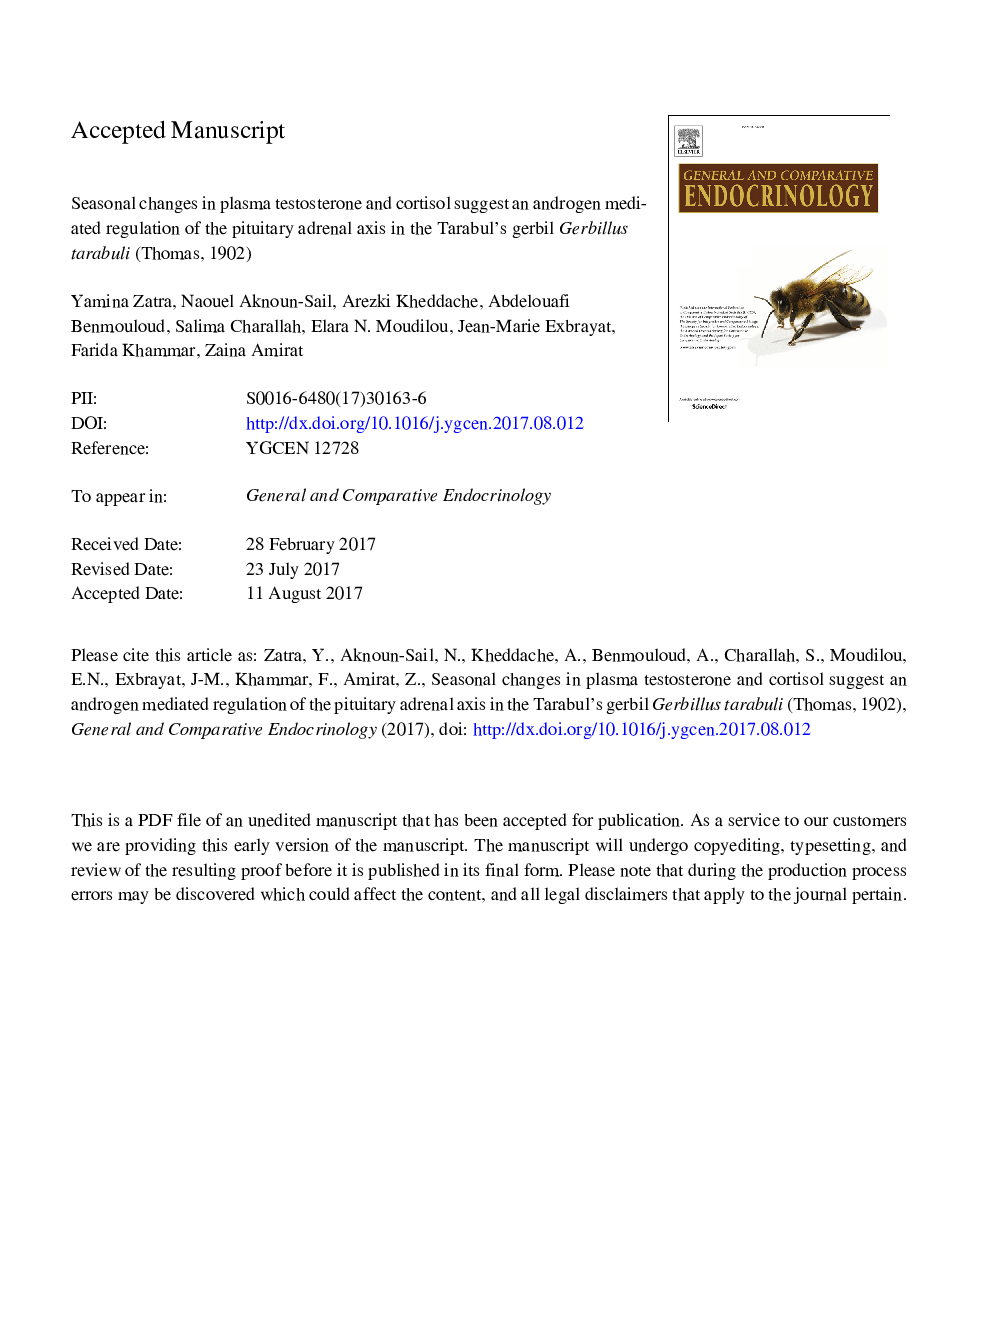 تغییرات فصلی در تستوسترون و کورتیزول در پلاسما نشان می دهد که تنظیم واسطه آندروژن از محور غده هیپوفیز در گربیلوس تارابولی (توماس، 1902) 